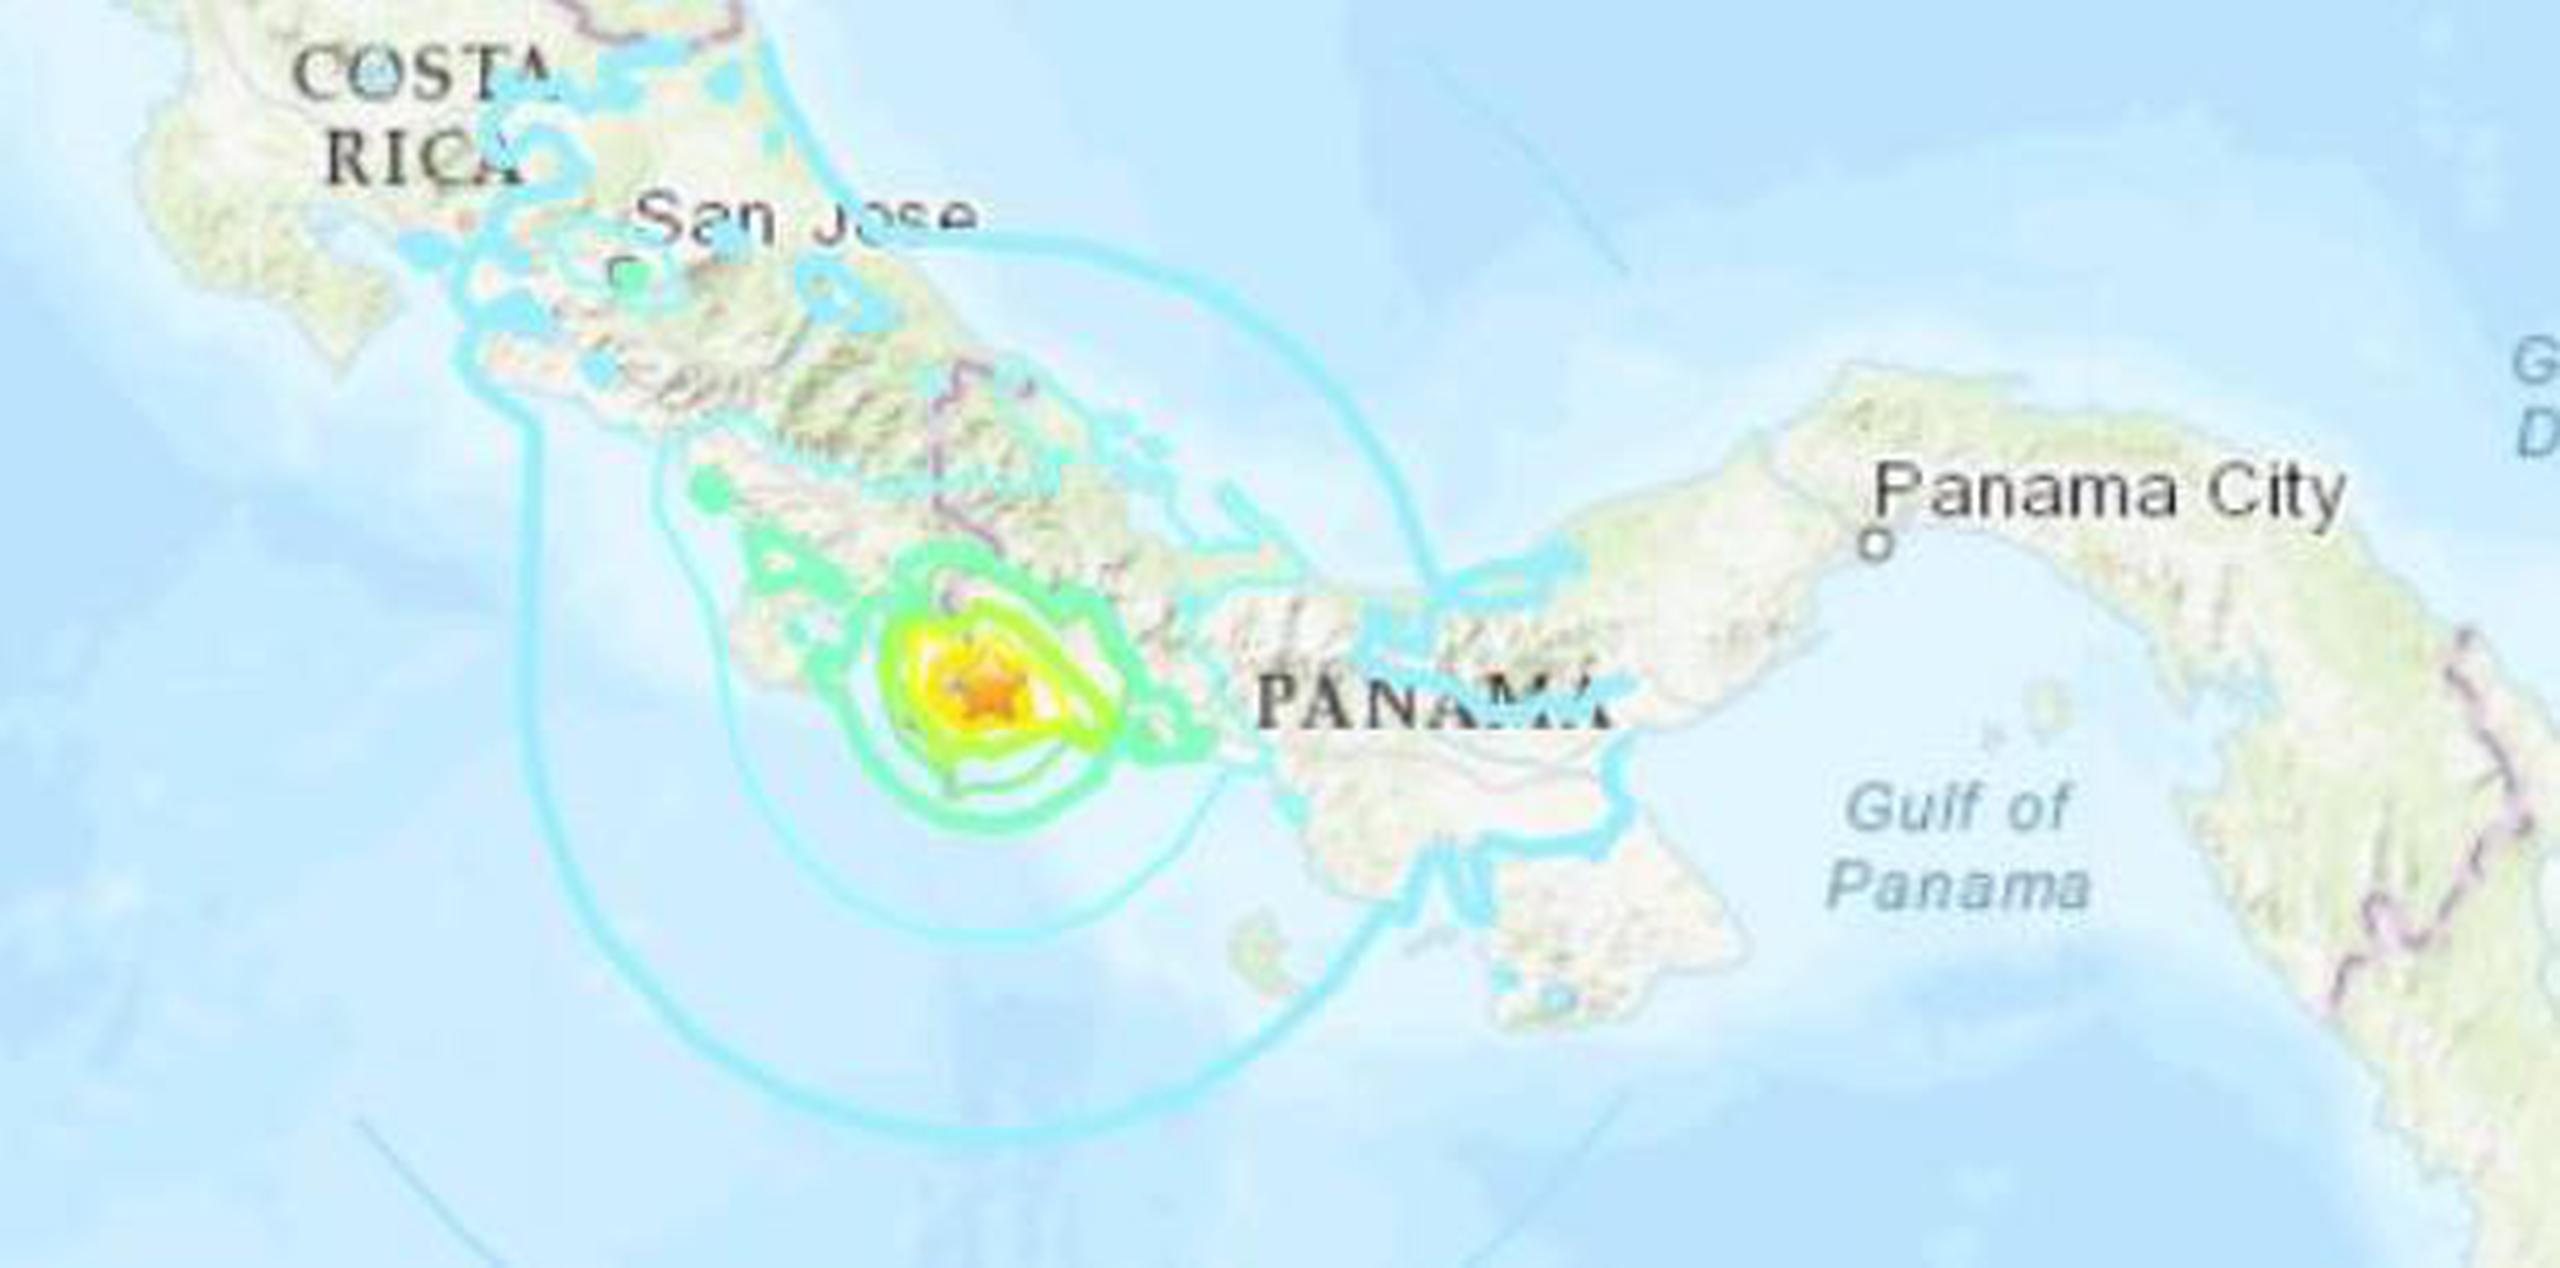 Luego del sismo principal se registraron al menos diez réplicas, informó el instituto de Geociencia de la Universidad de Panamá. (Servicio Geológico de Estados Unidos)